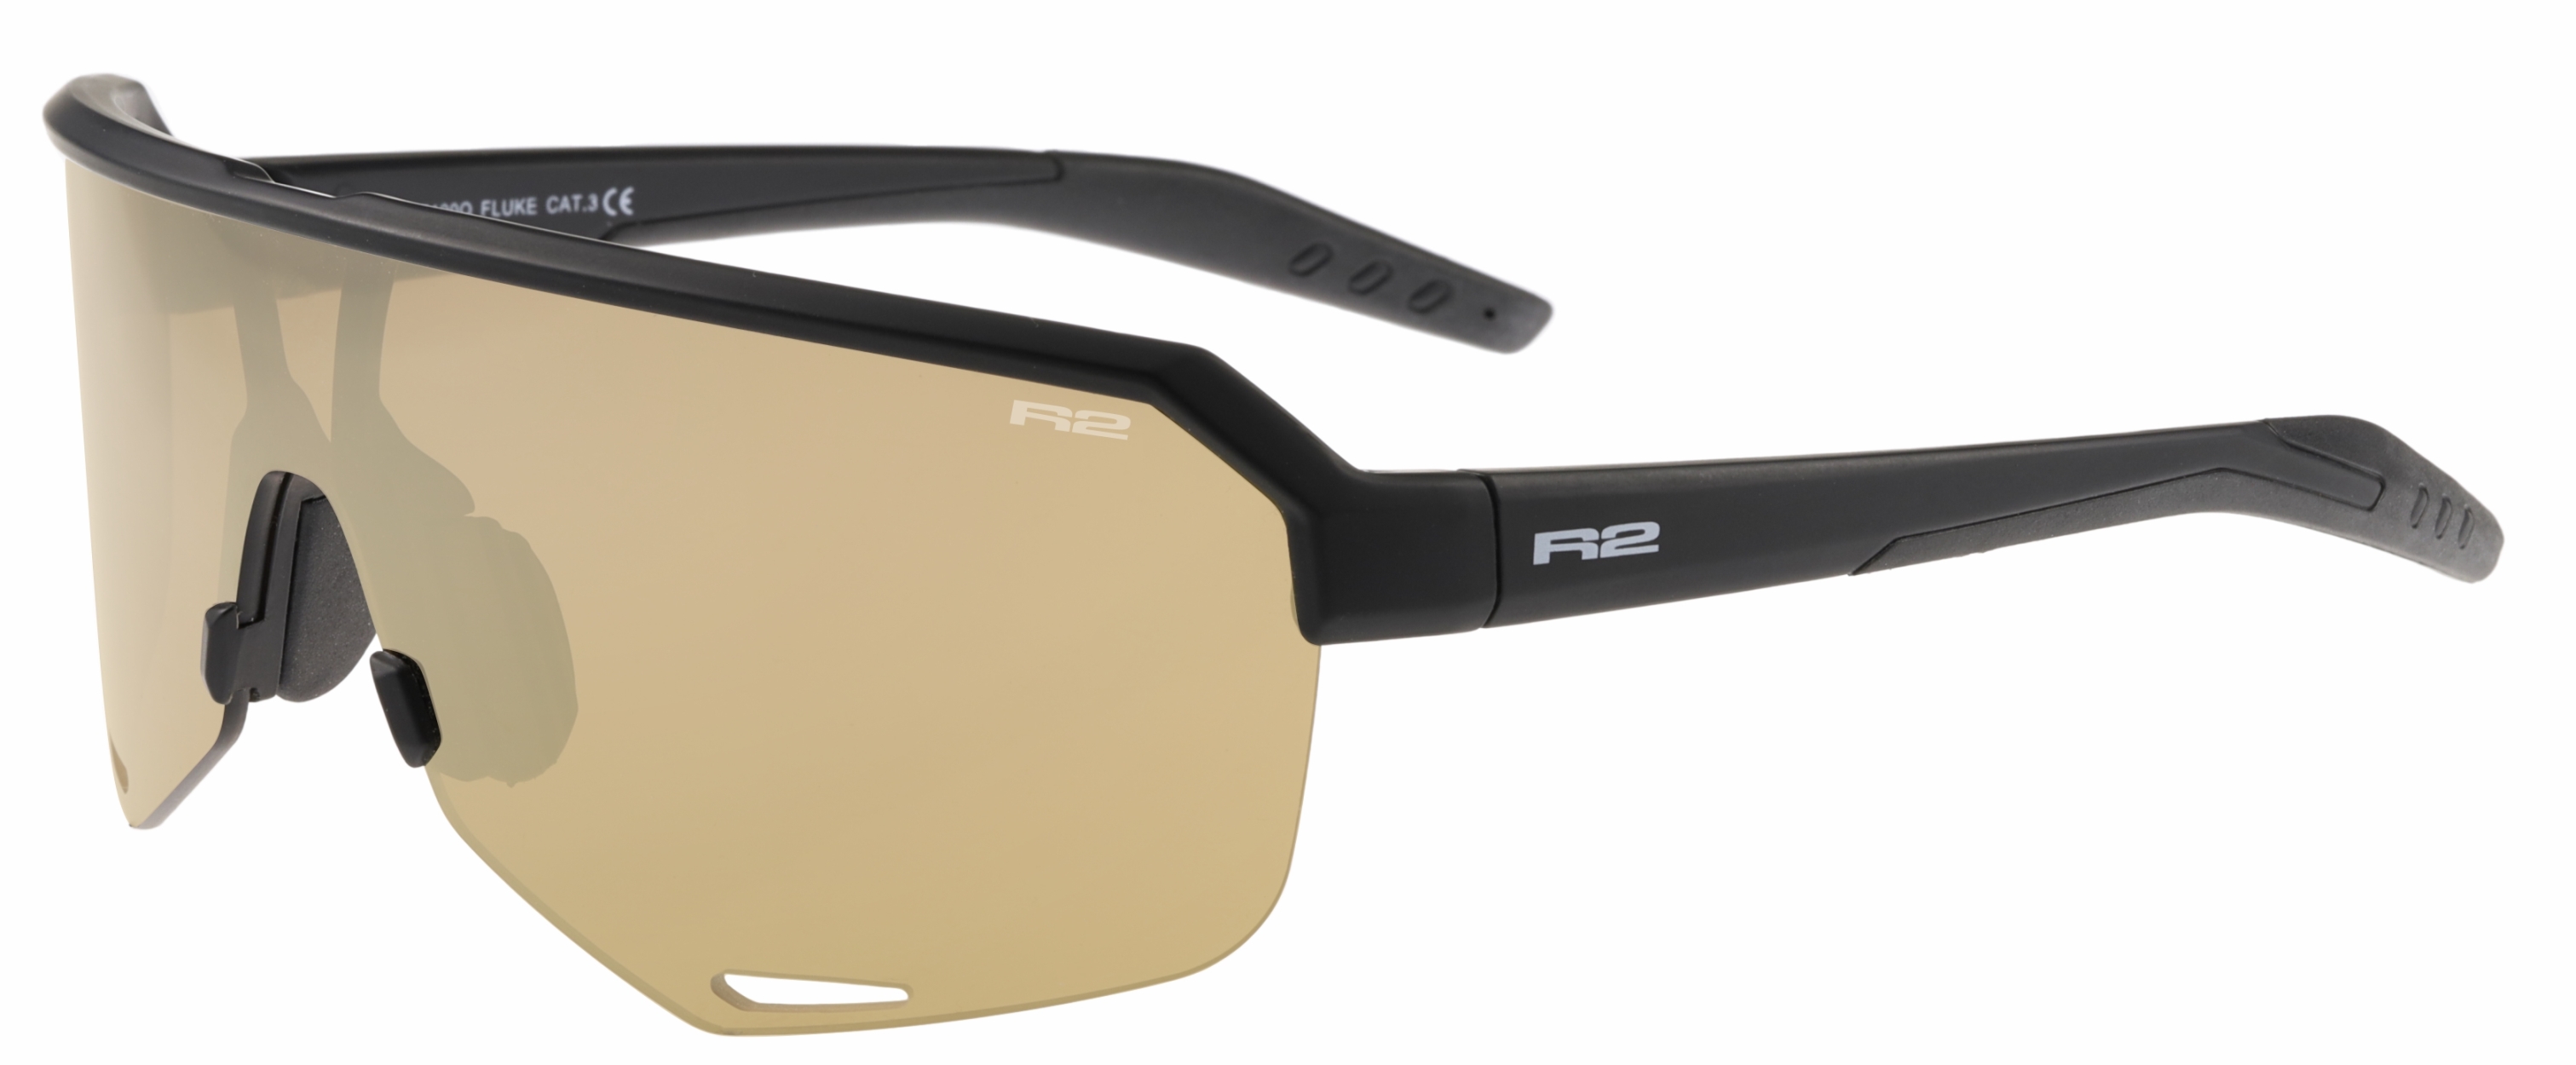 HD sport sunglasses R2 FLUKE AT100Q standard